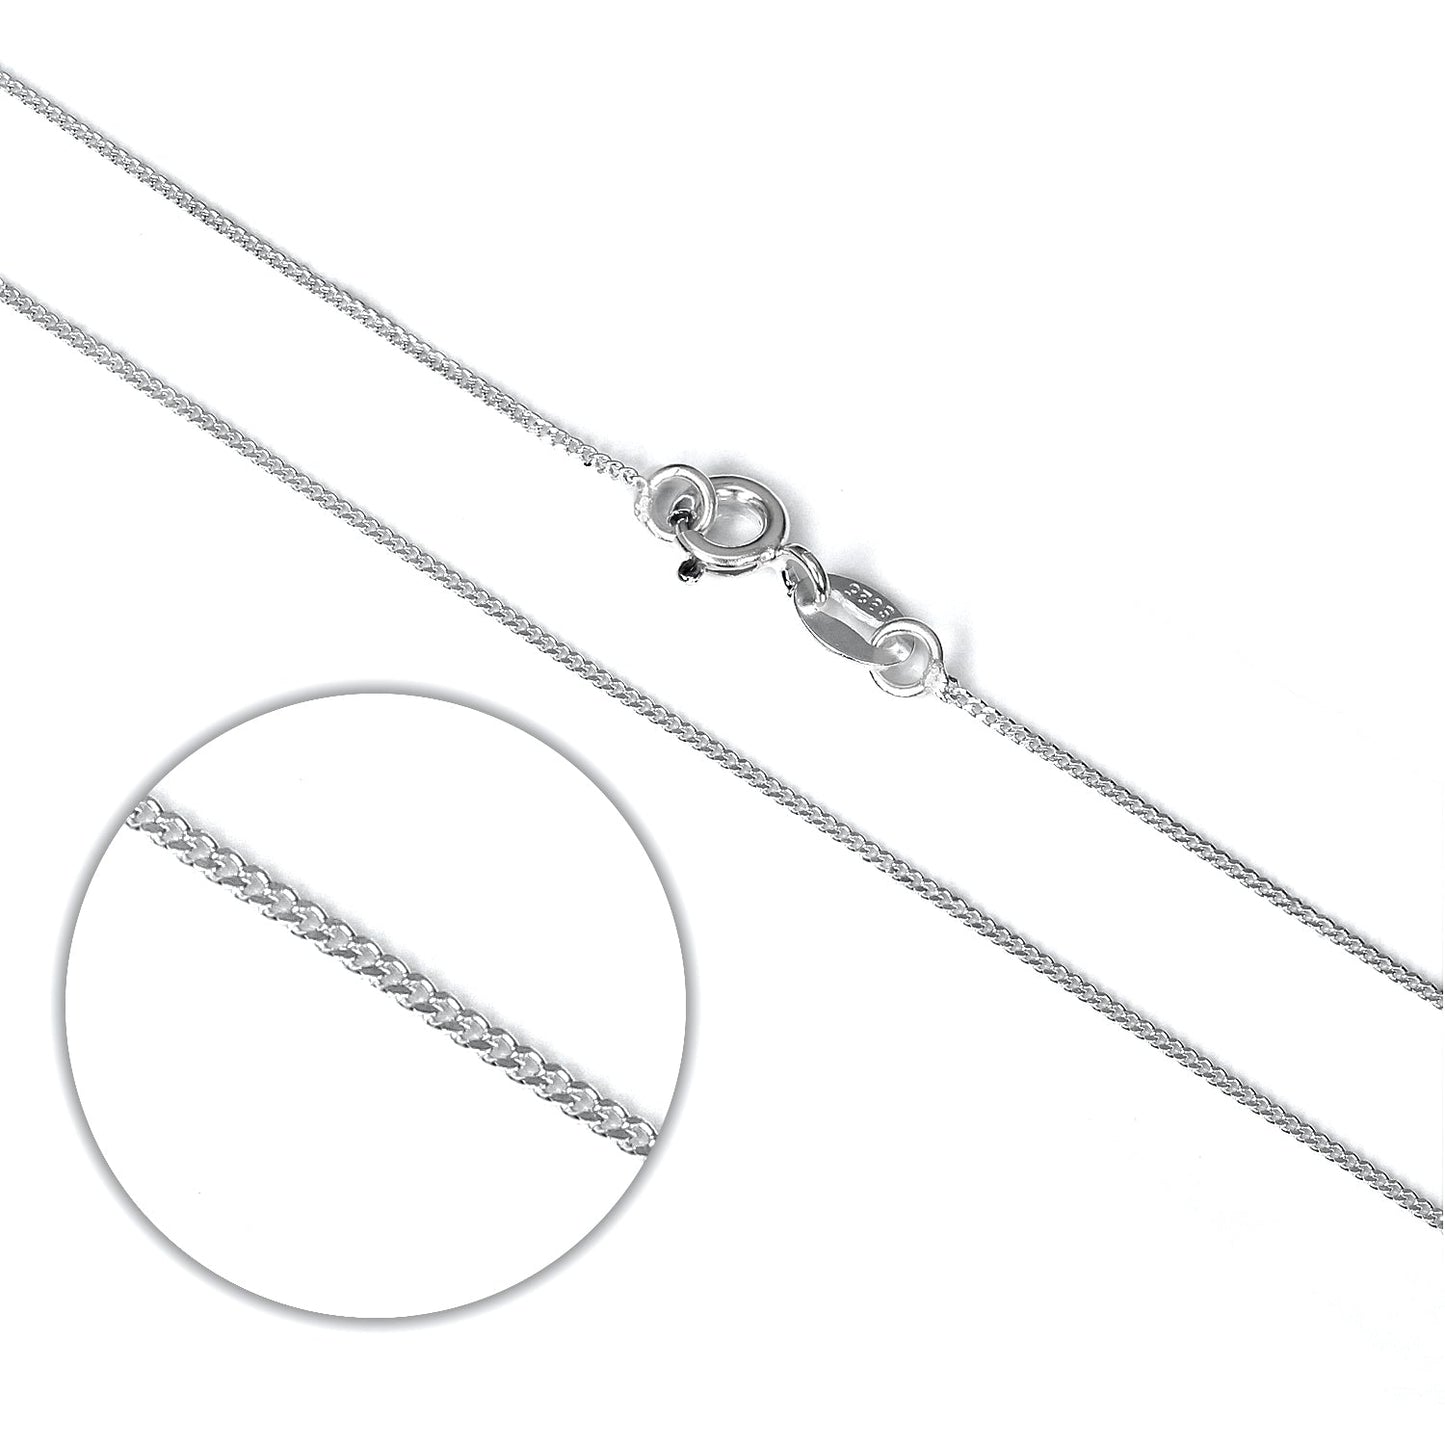 Sterling Silver Diamond Cut Curb Chain